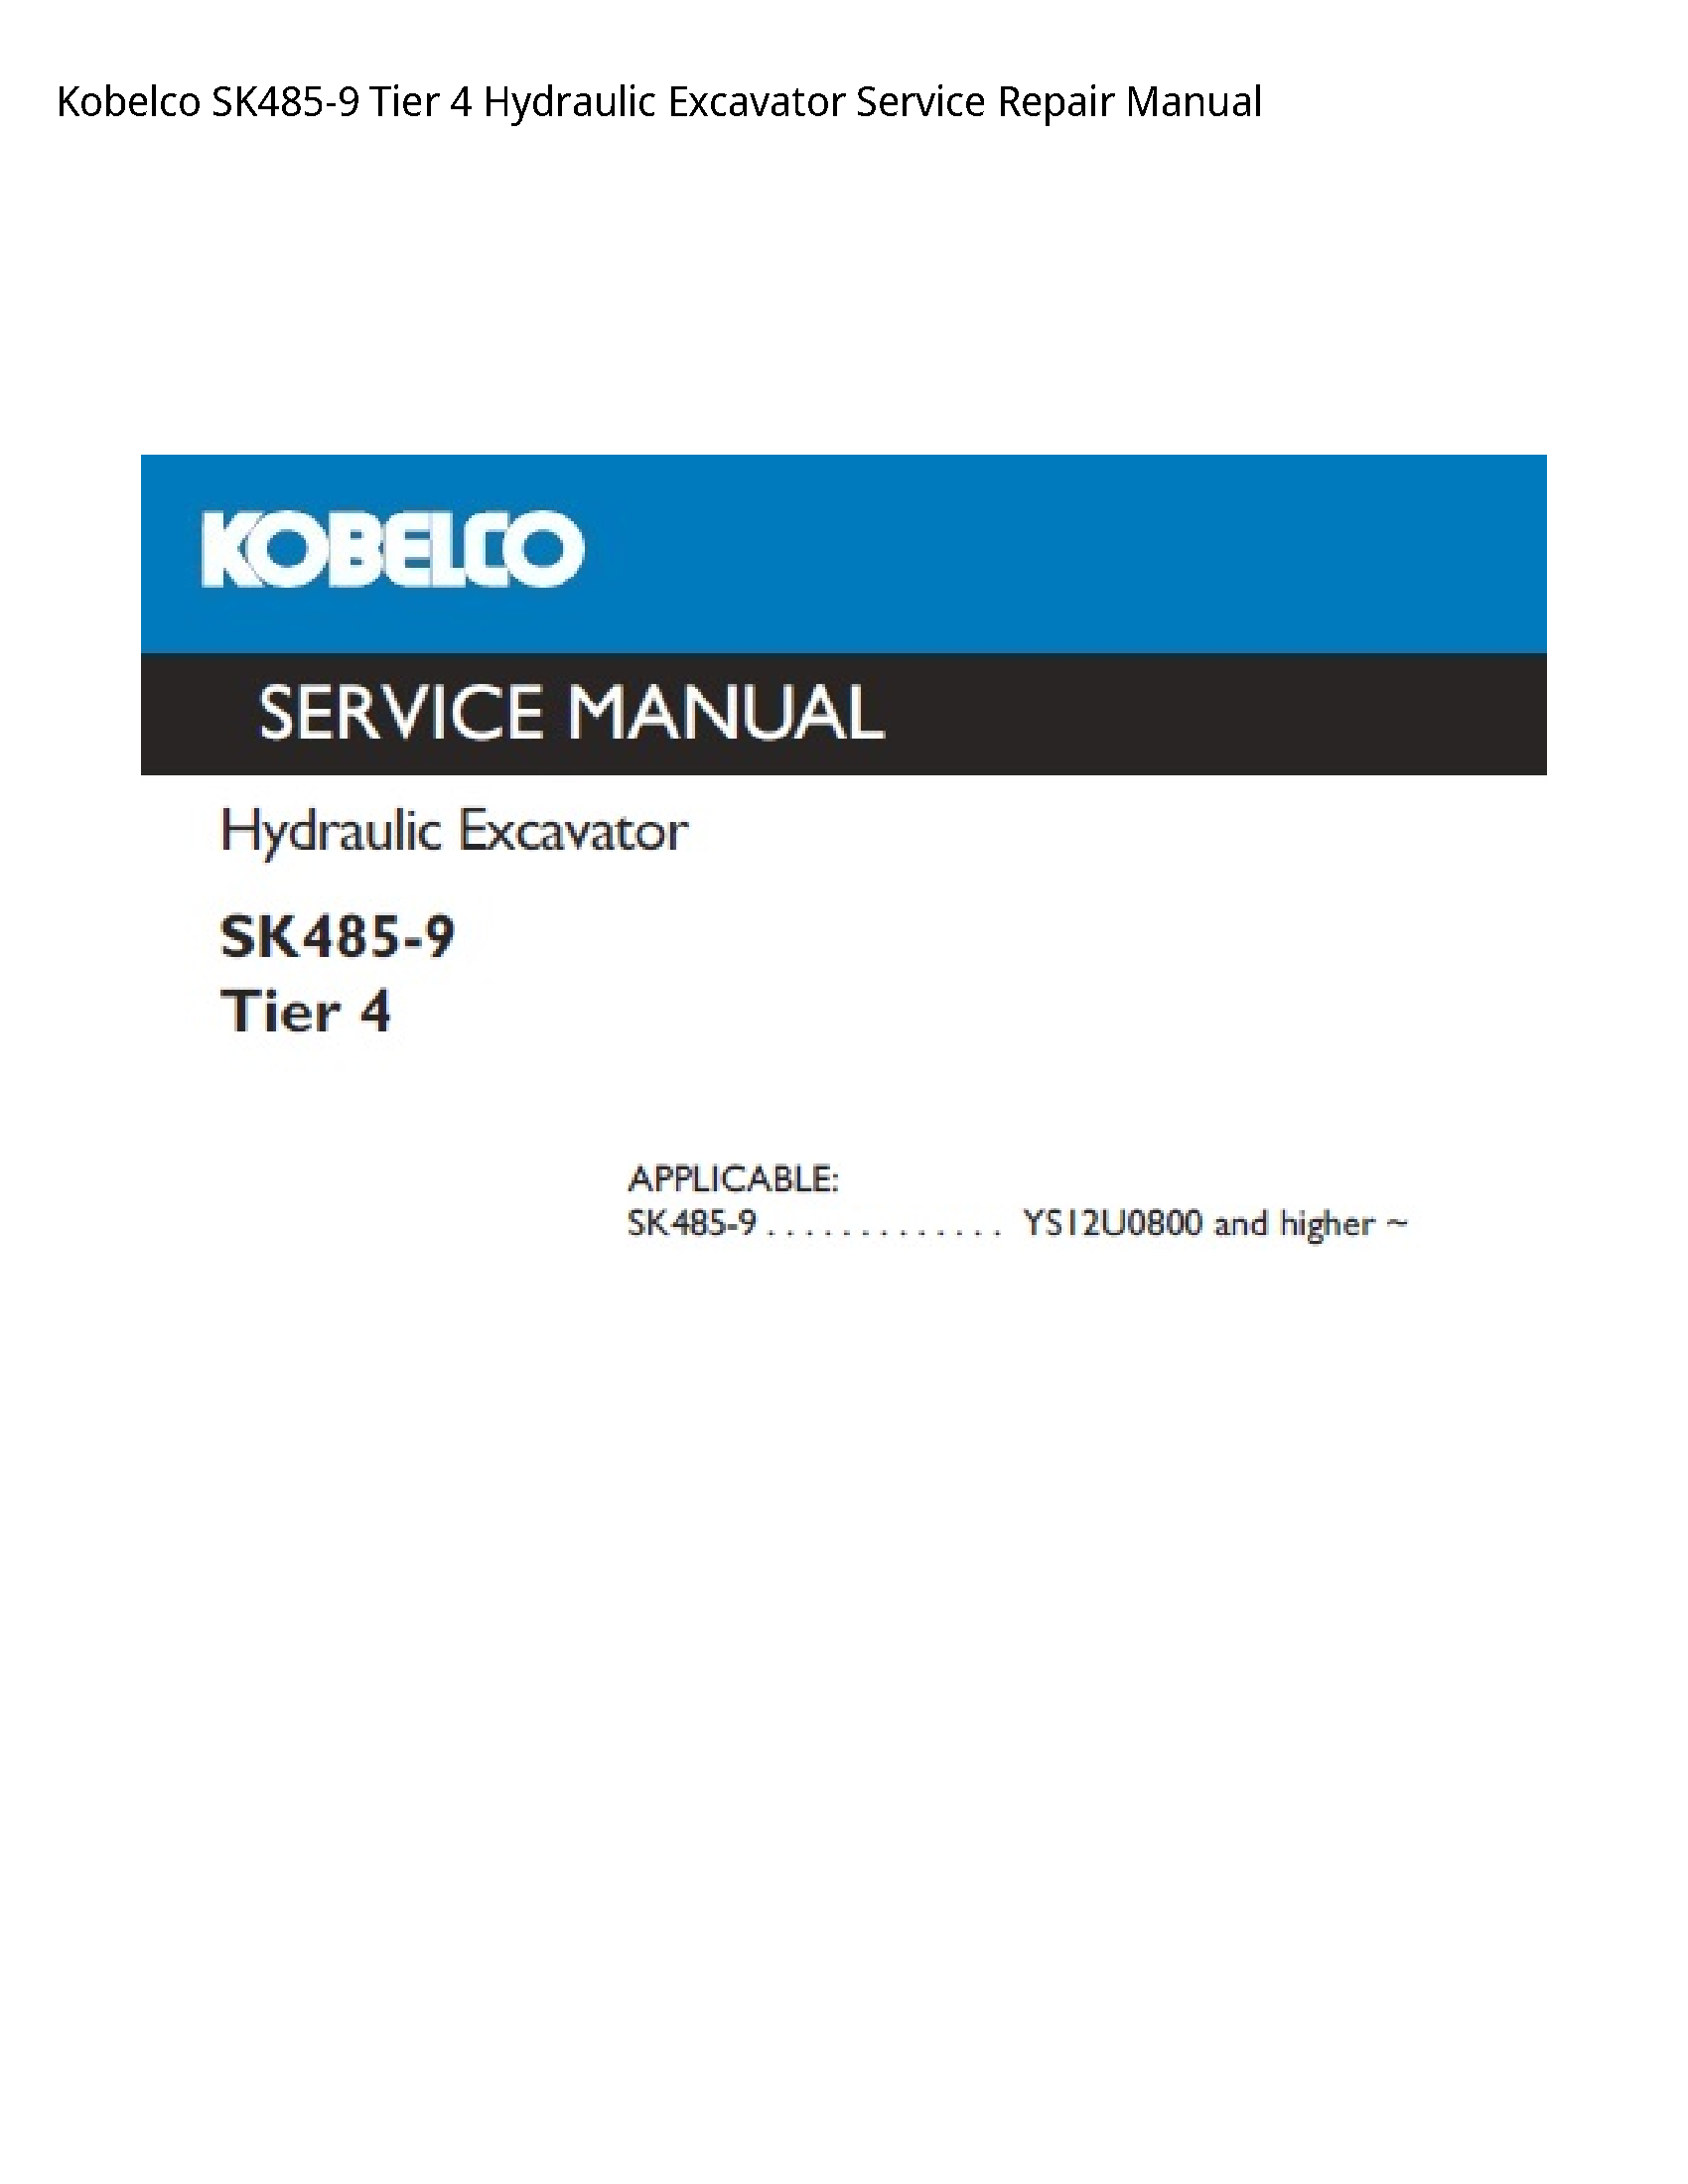 Kobelco SK485-9 Tier Hydraulic Excavator manual